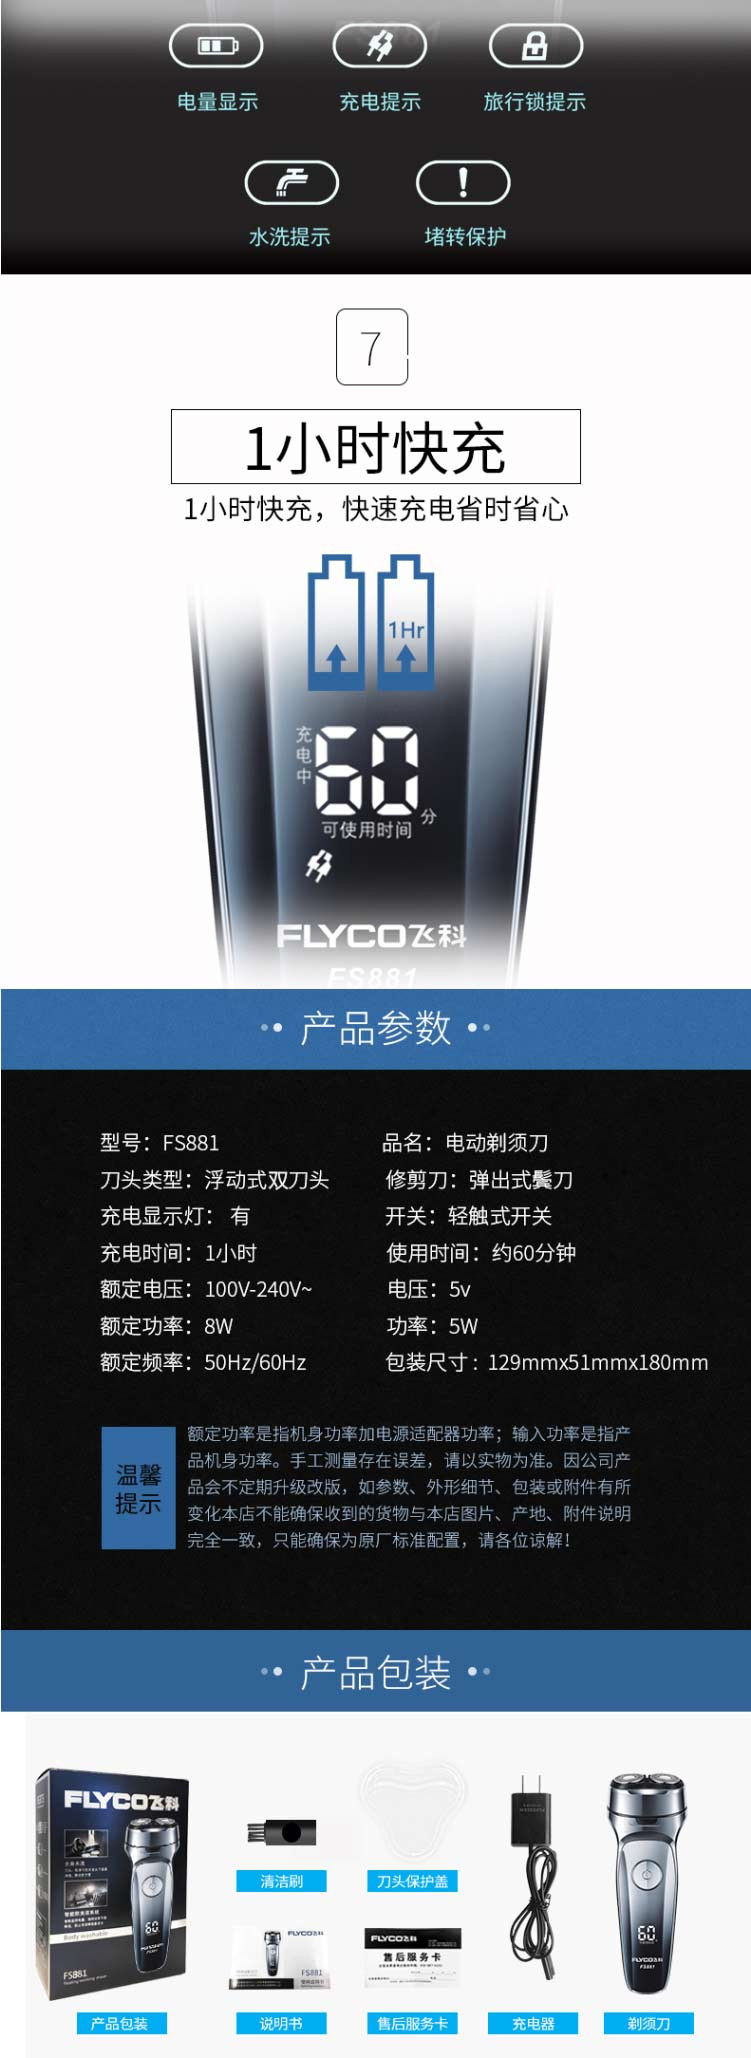 飞科(FLYCO)电动剃须刀FS881 全身水洗 双刀头旋转式 智能电量显示 快充刮胡刀 浮动贴面